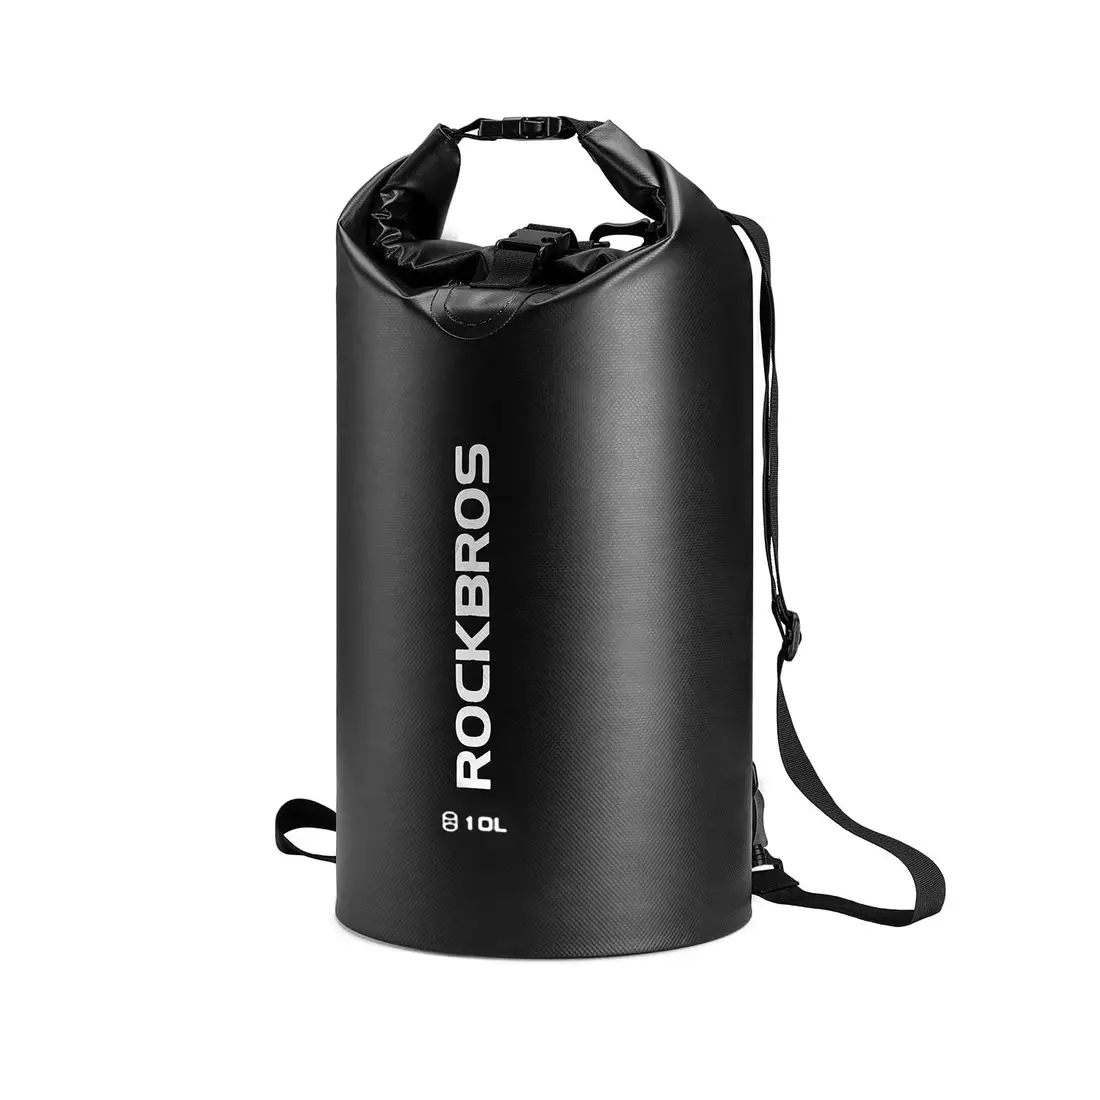 Rockbros wodoodporny plecak/worek 10l ST-004BK czarny